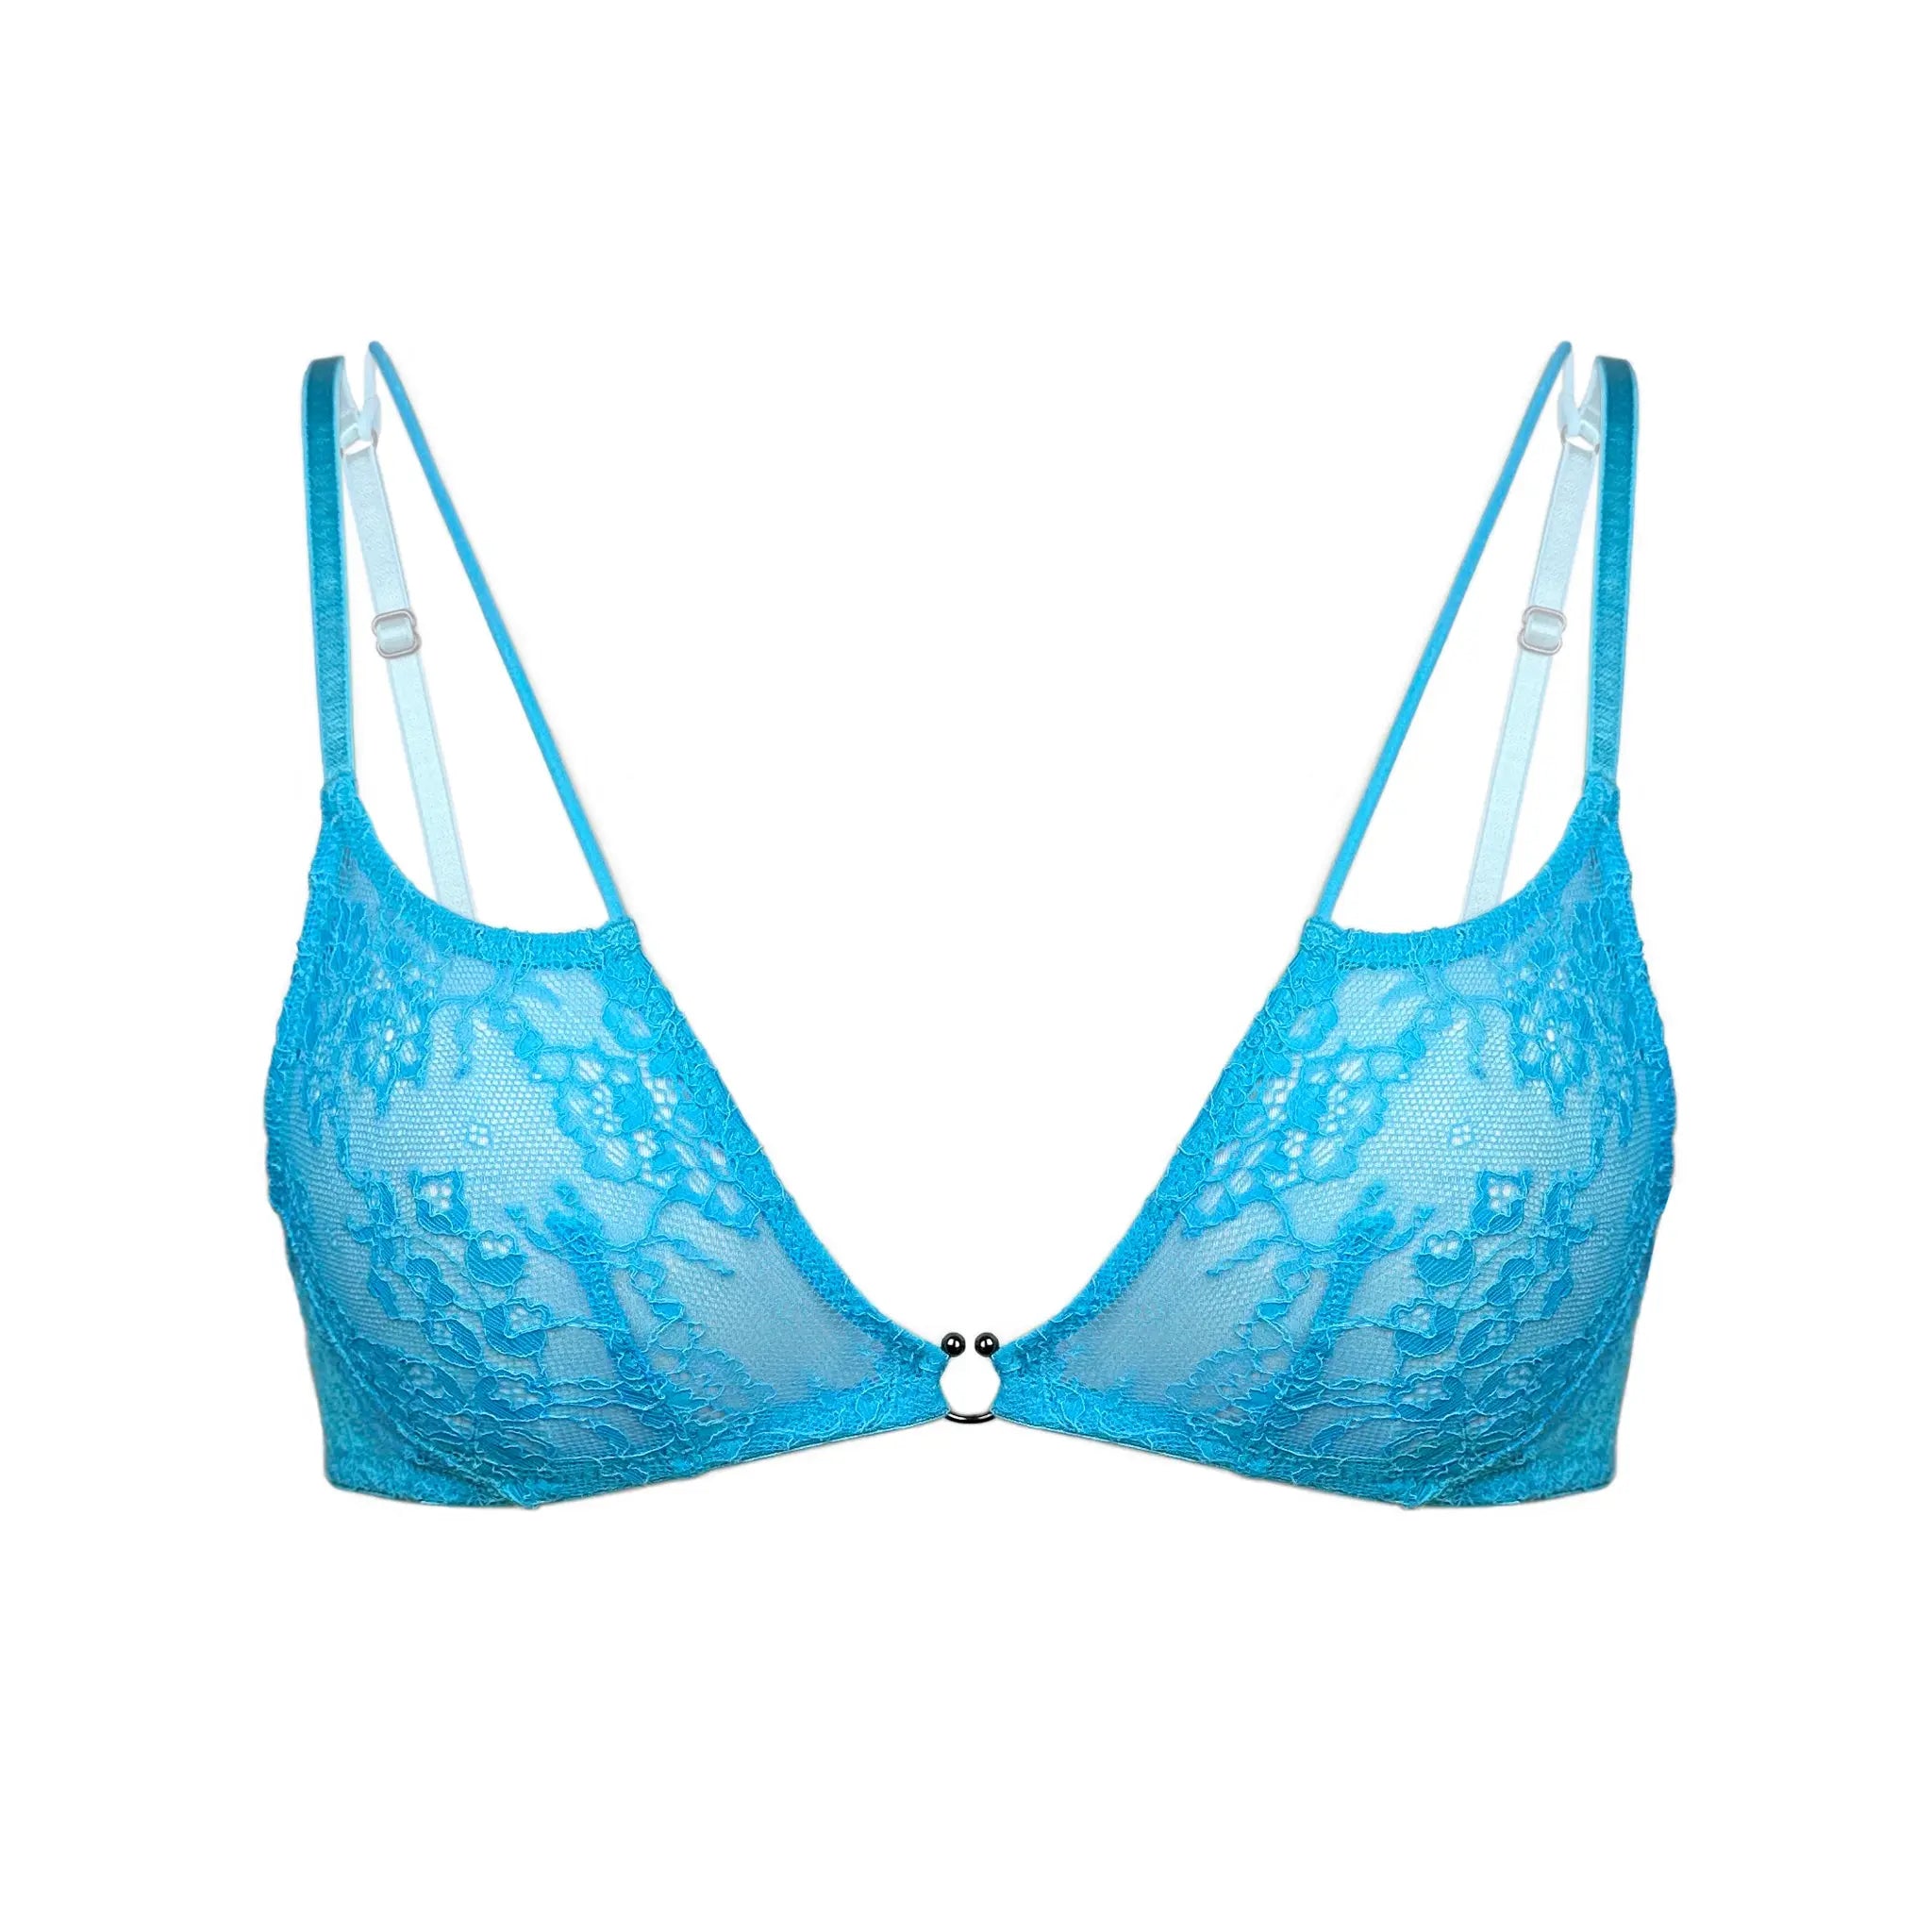 HIIT multiway bralette in blue - ShopStyle Sports Bras & Underwear